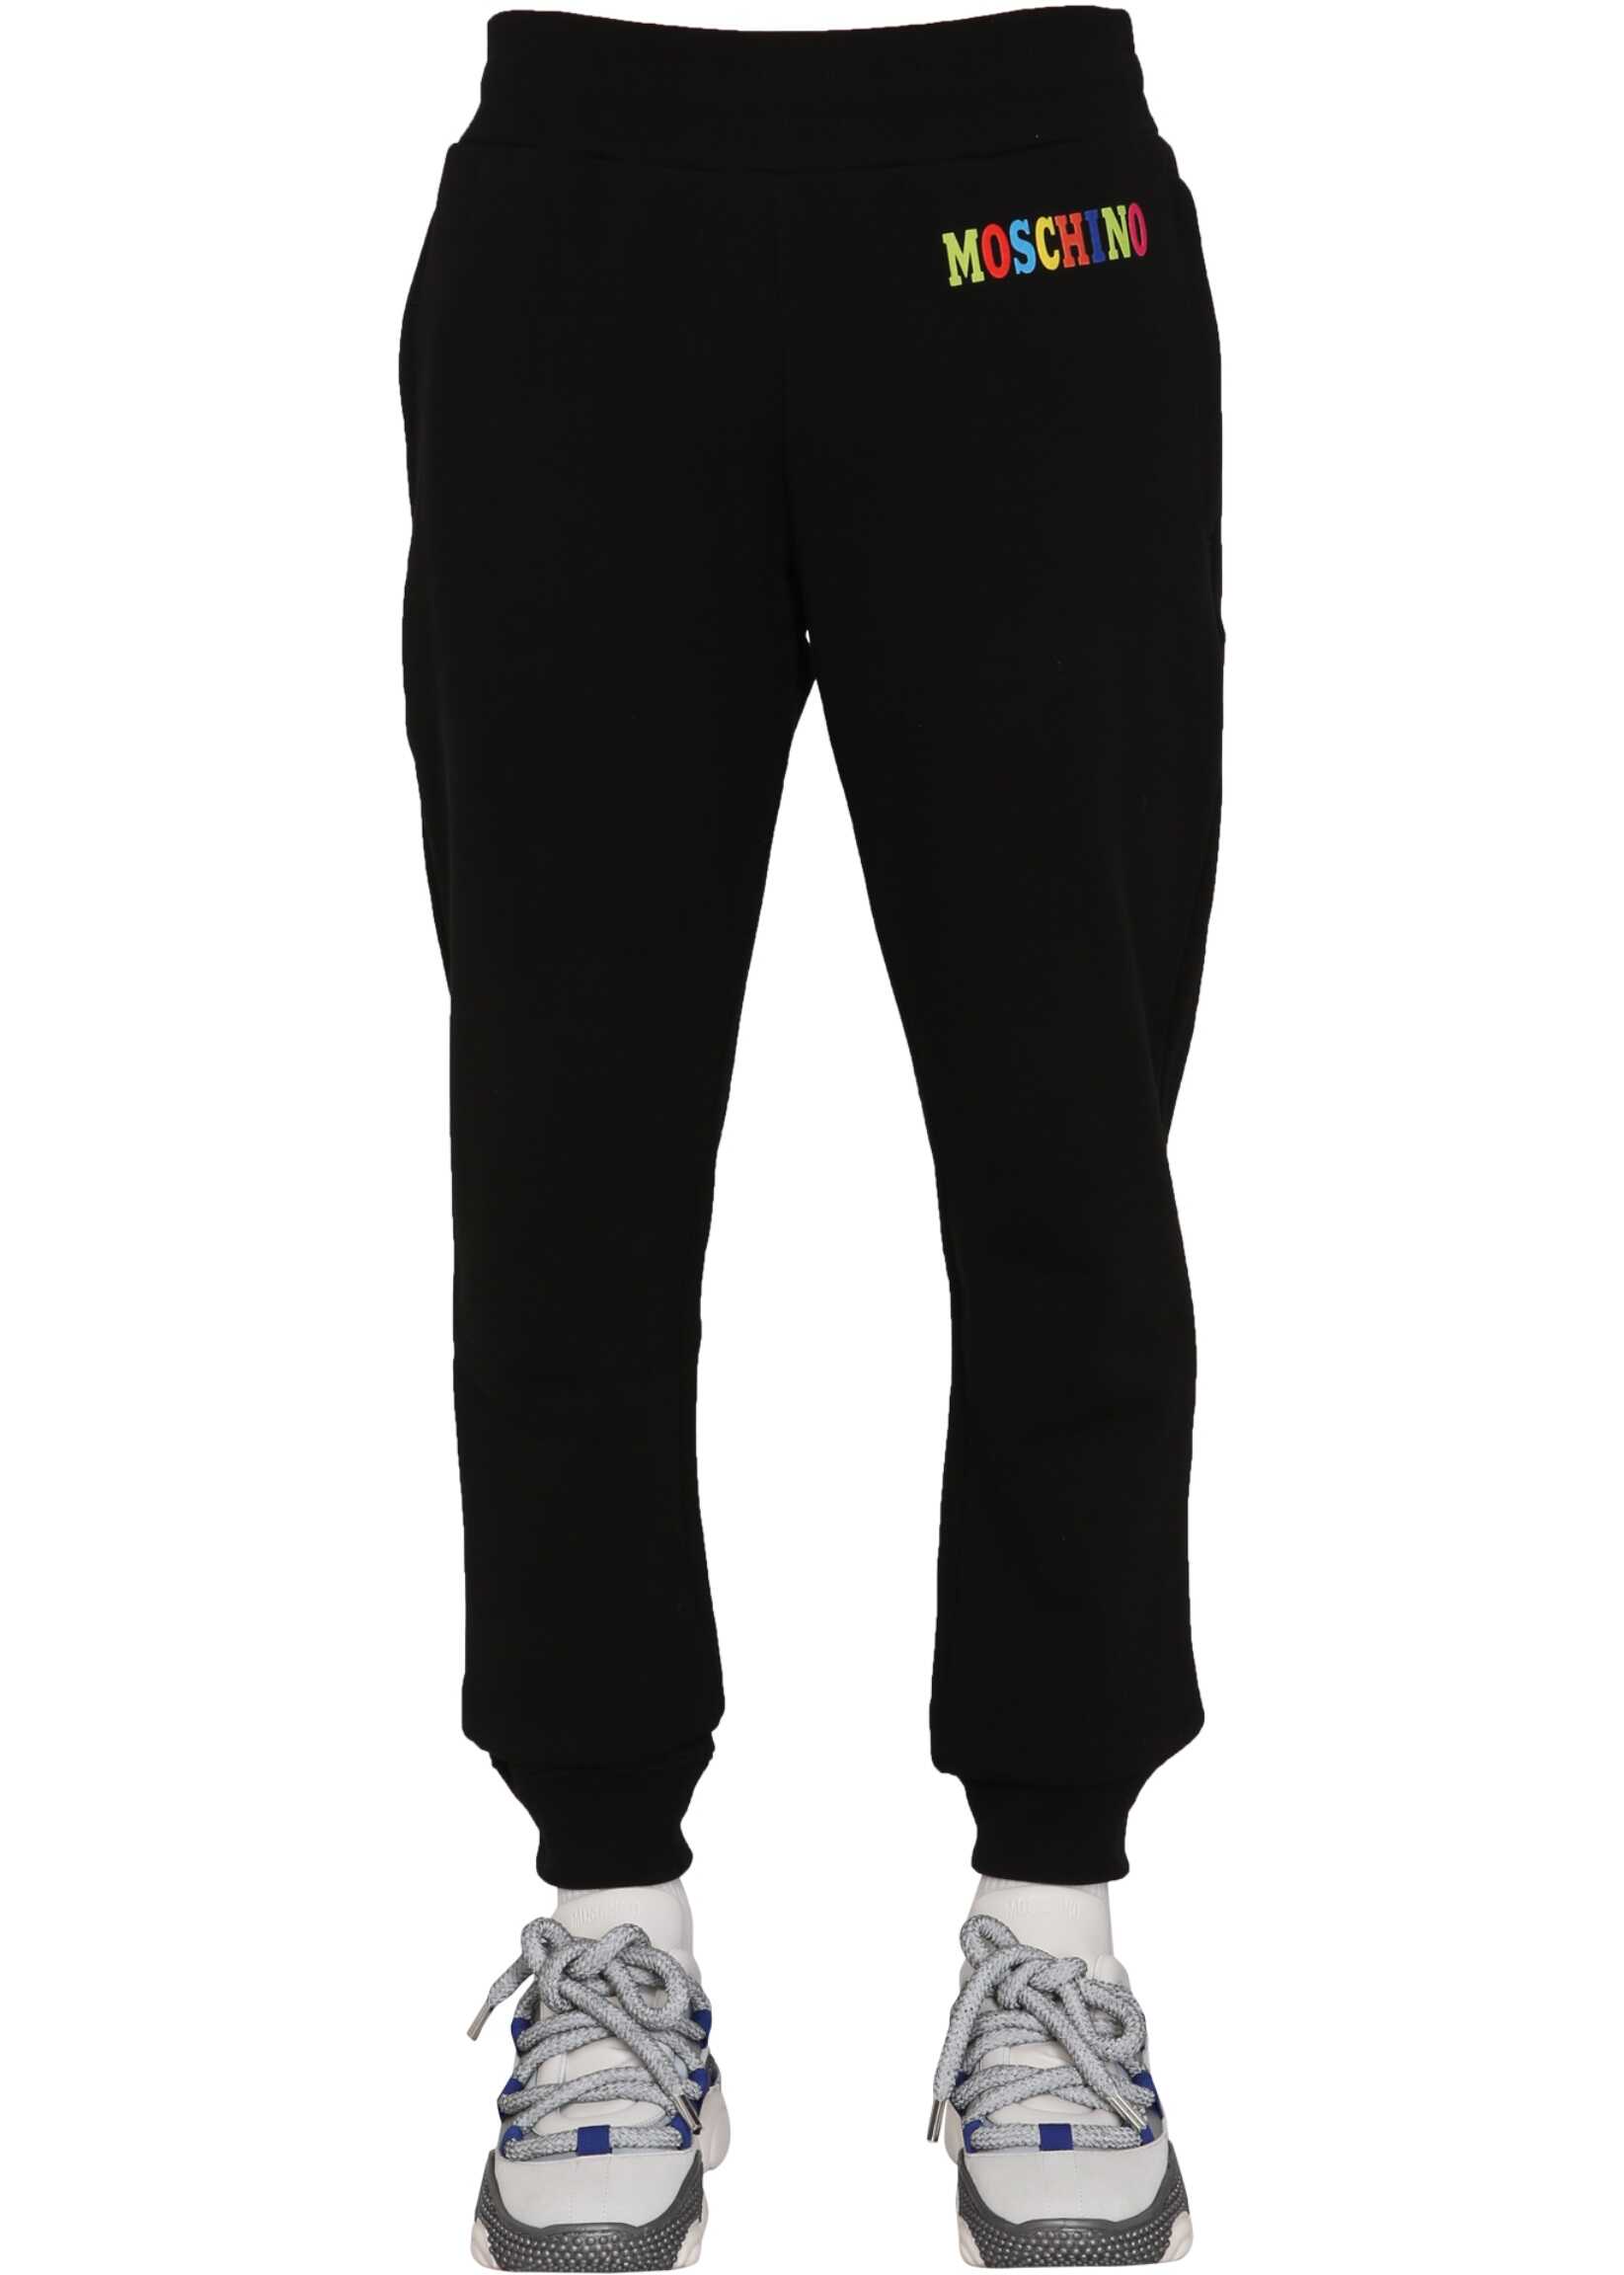 Moschino Multicolor Logo Jogging Pants BLACK